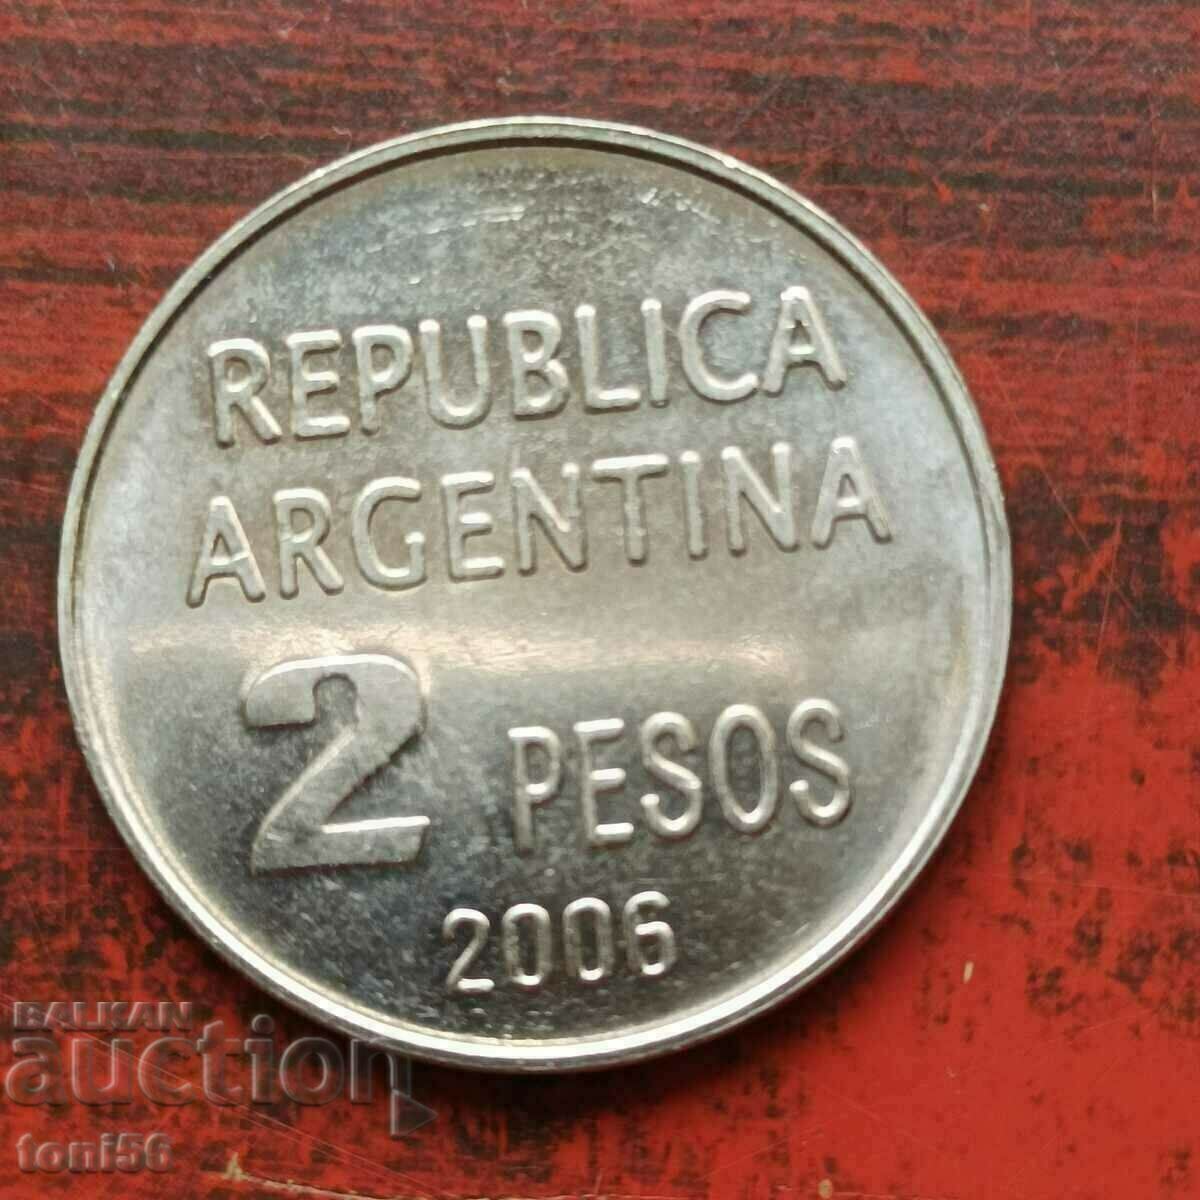 Αργεντινή 2 πέσος 2006 αναμνηστικό UNC